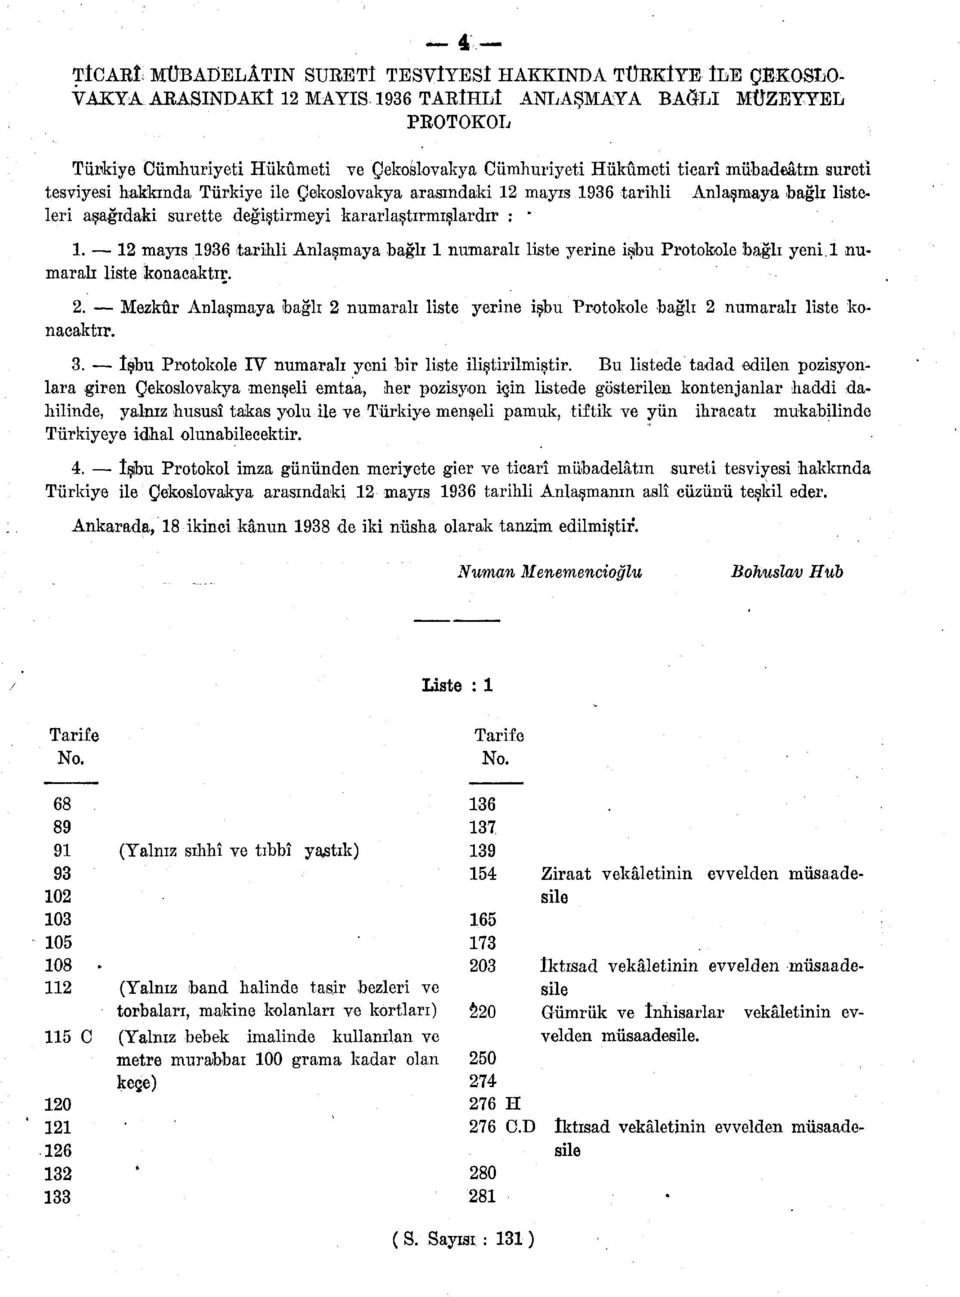 mayıs 1936 tarihli Anlaşmaya bağlı listeleri aşağıdaki surette değiştirmeyi kararlaştırmışlardır : " 1.